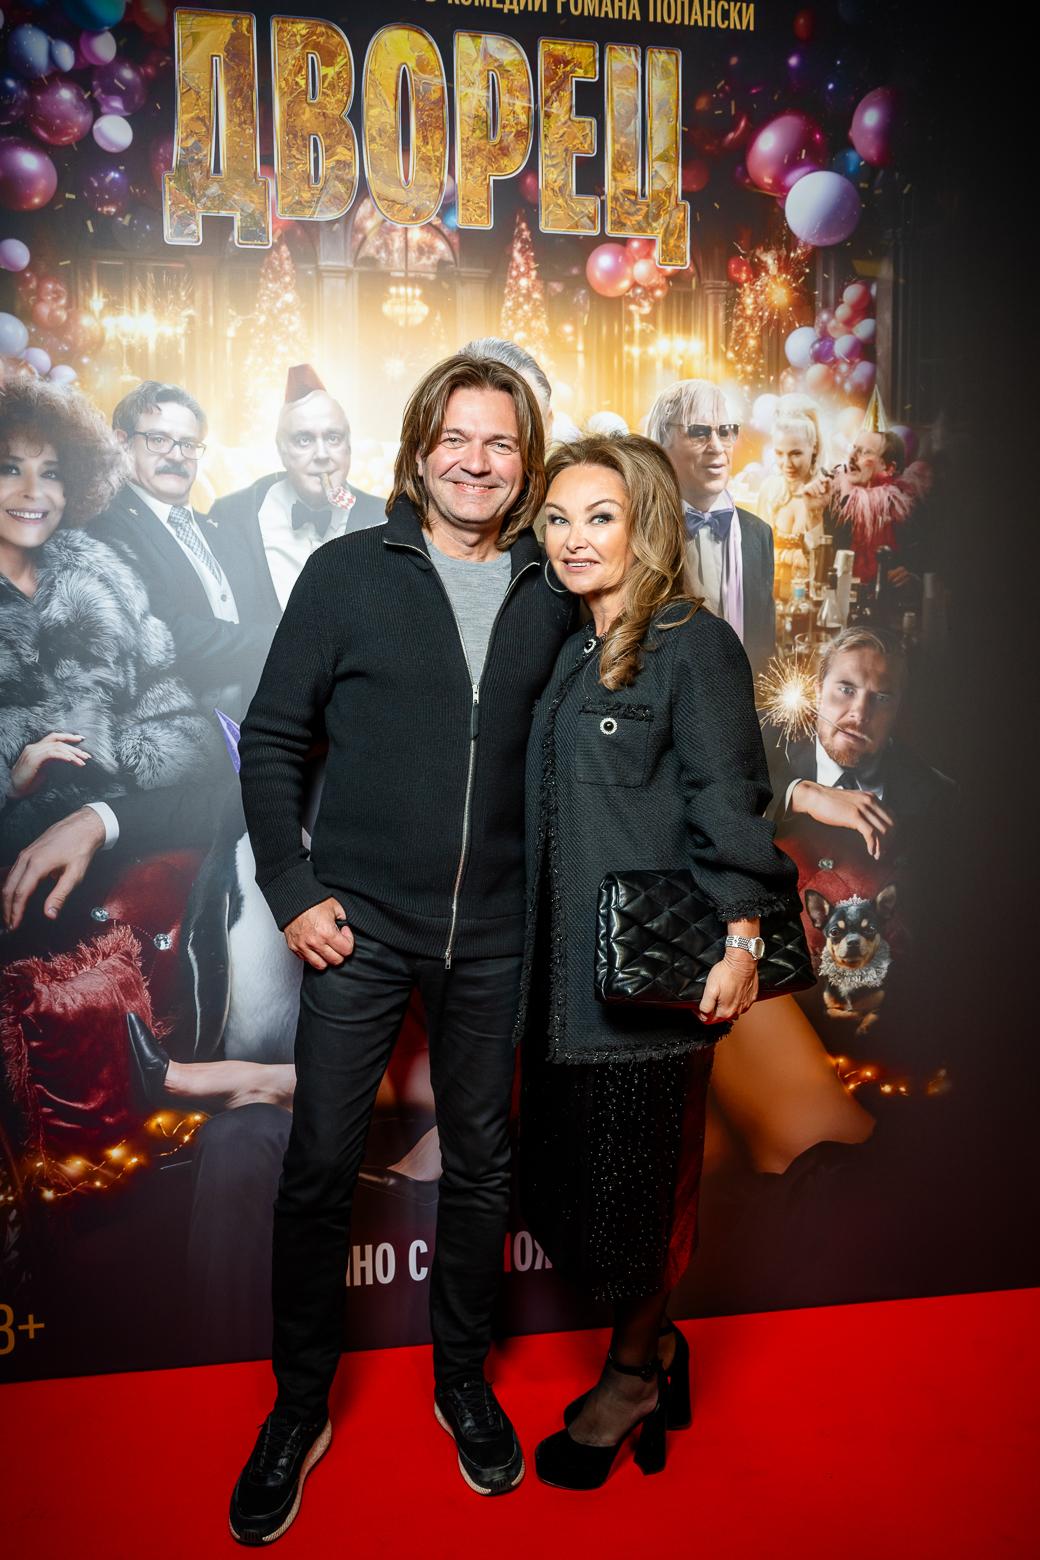 Дмитрий Маликов, певец с женой